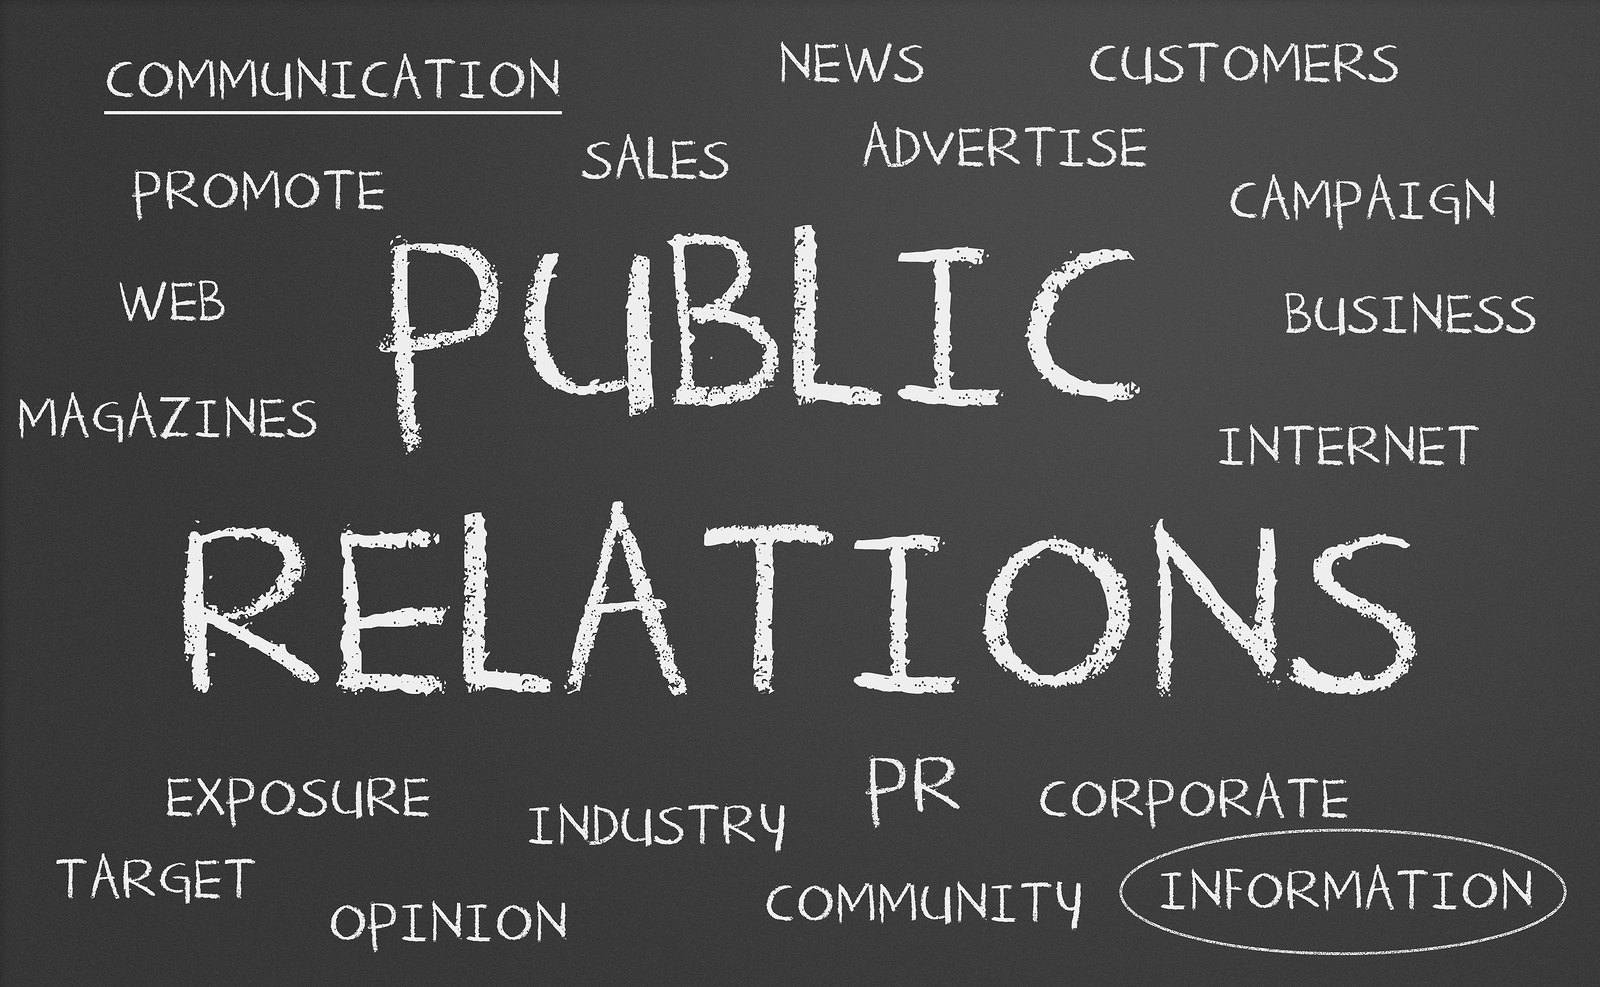 Public Relations 